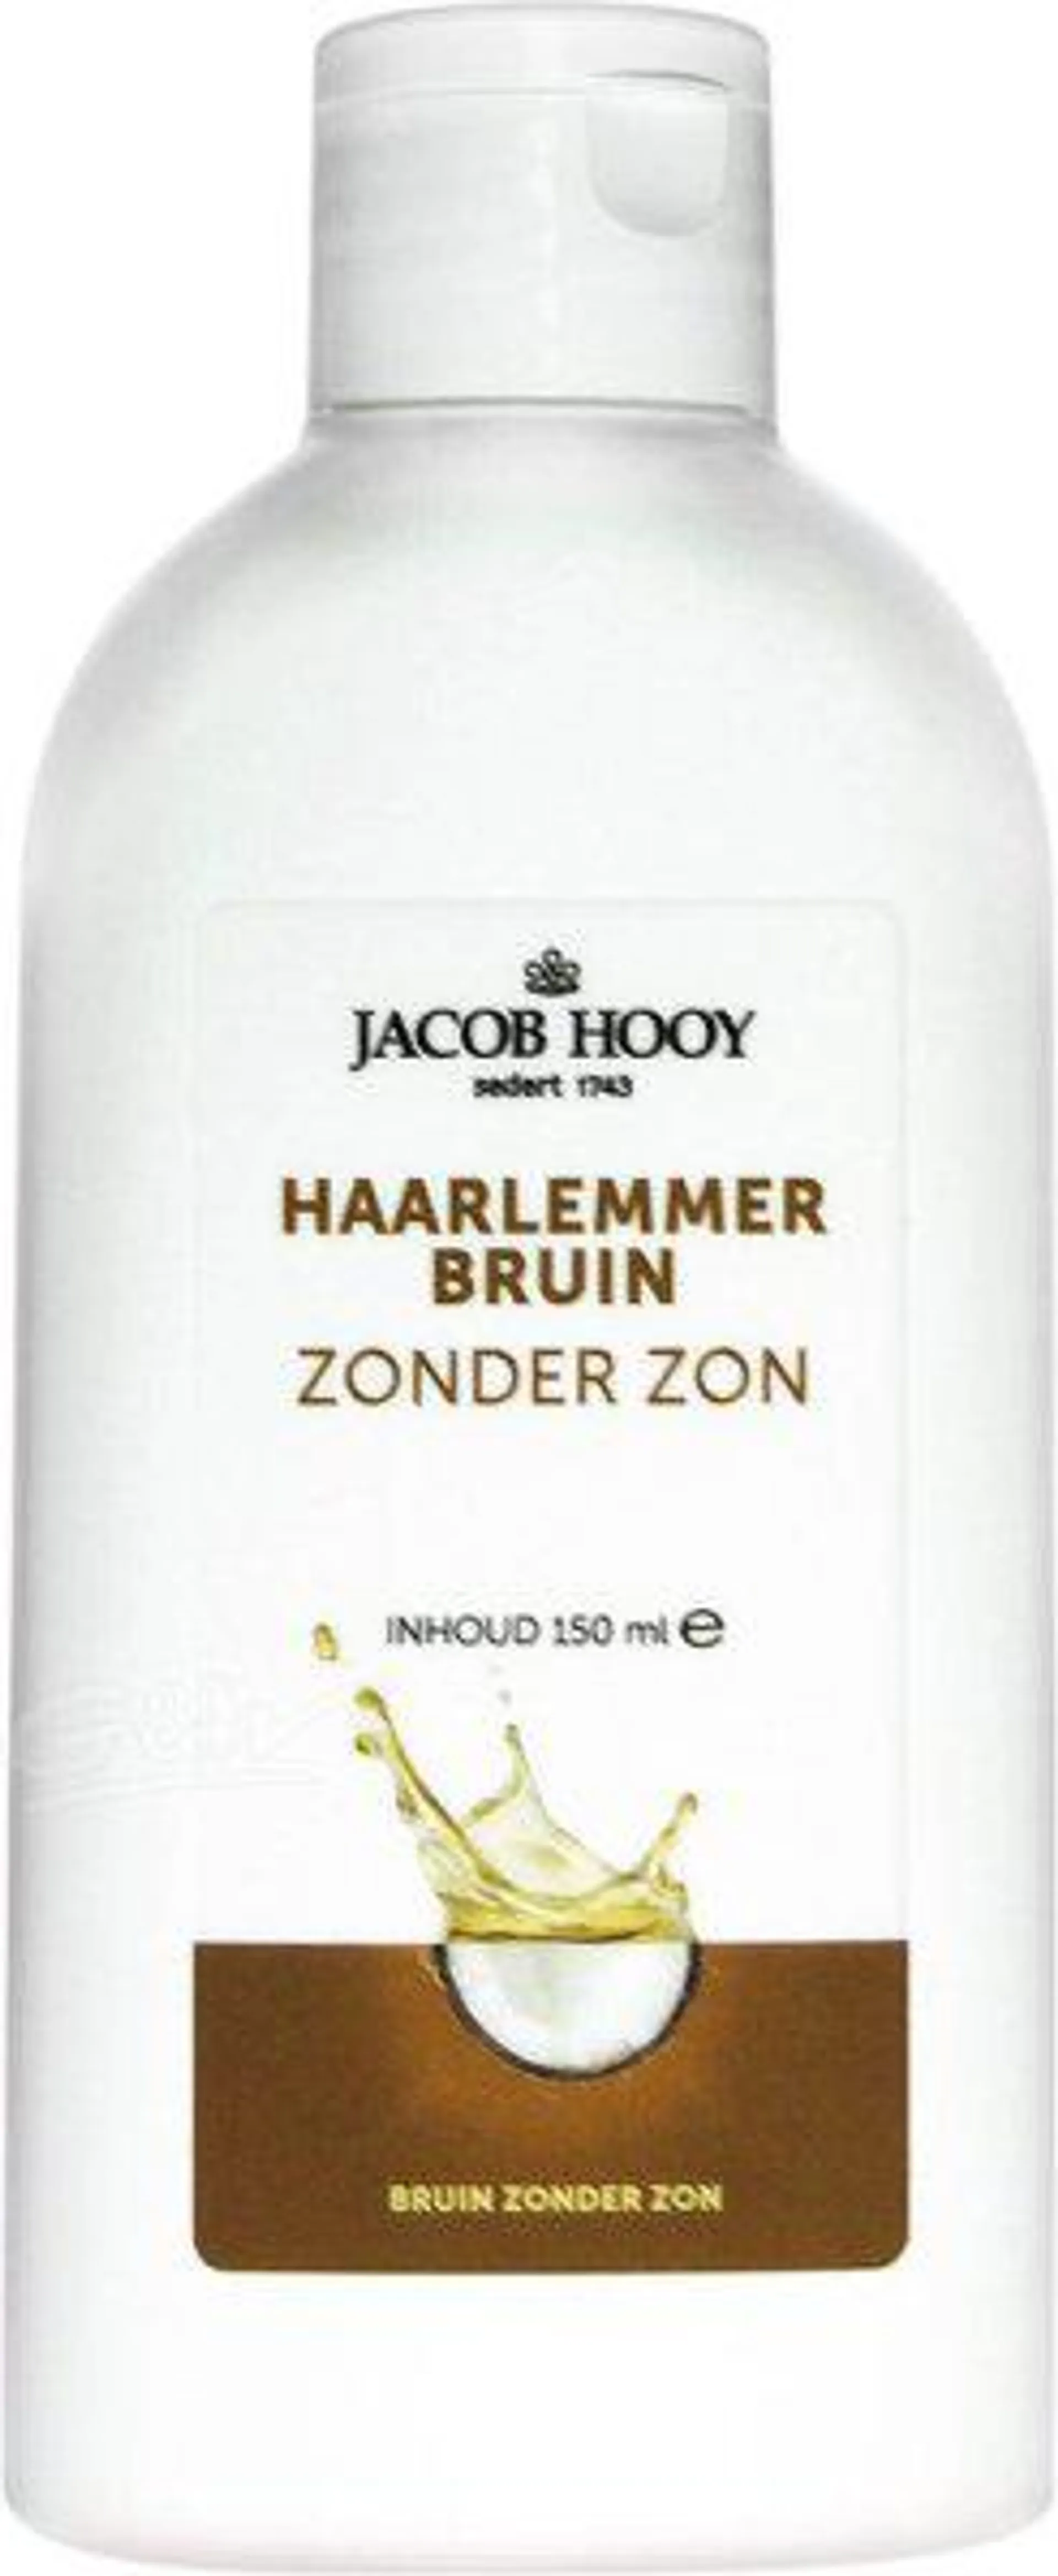 Jacob Hooy Haarlemmerbruin Zonder Zon